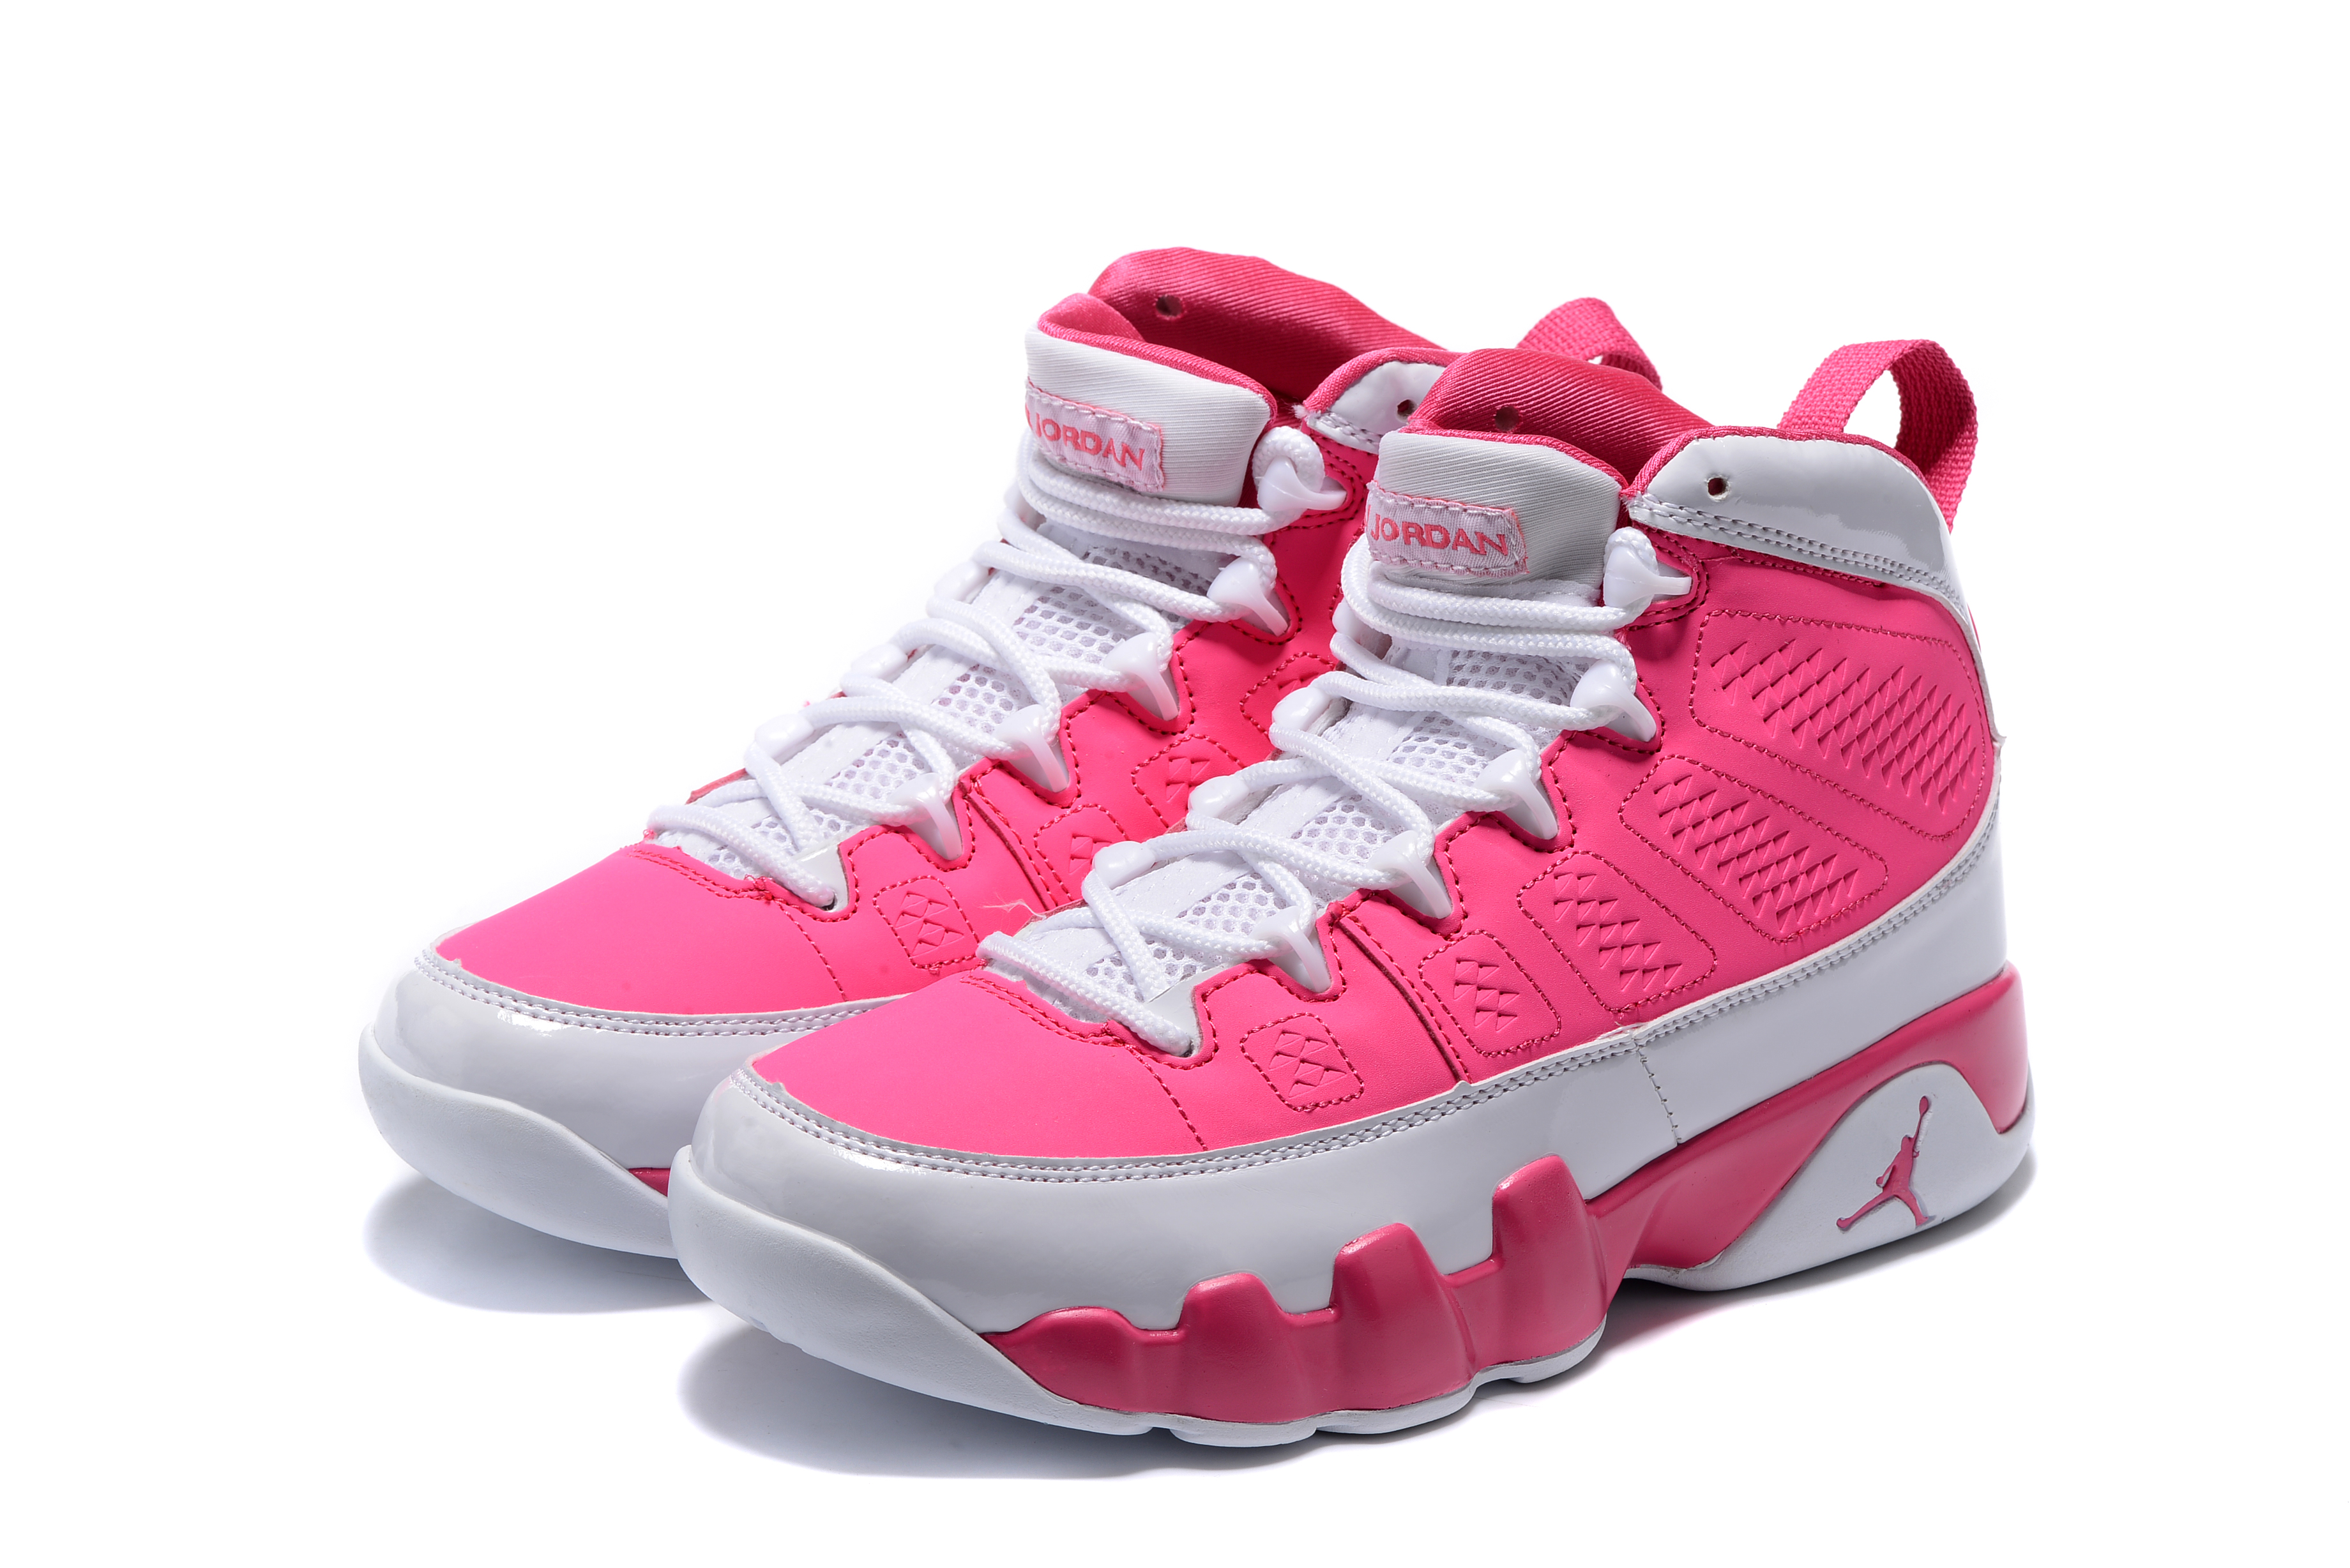 Women's Air Jordan 9 GS Peach Pink/White Basketball Shoes